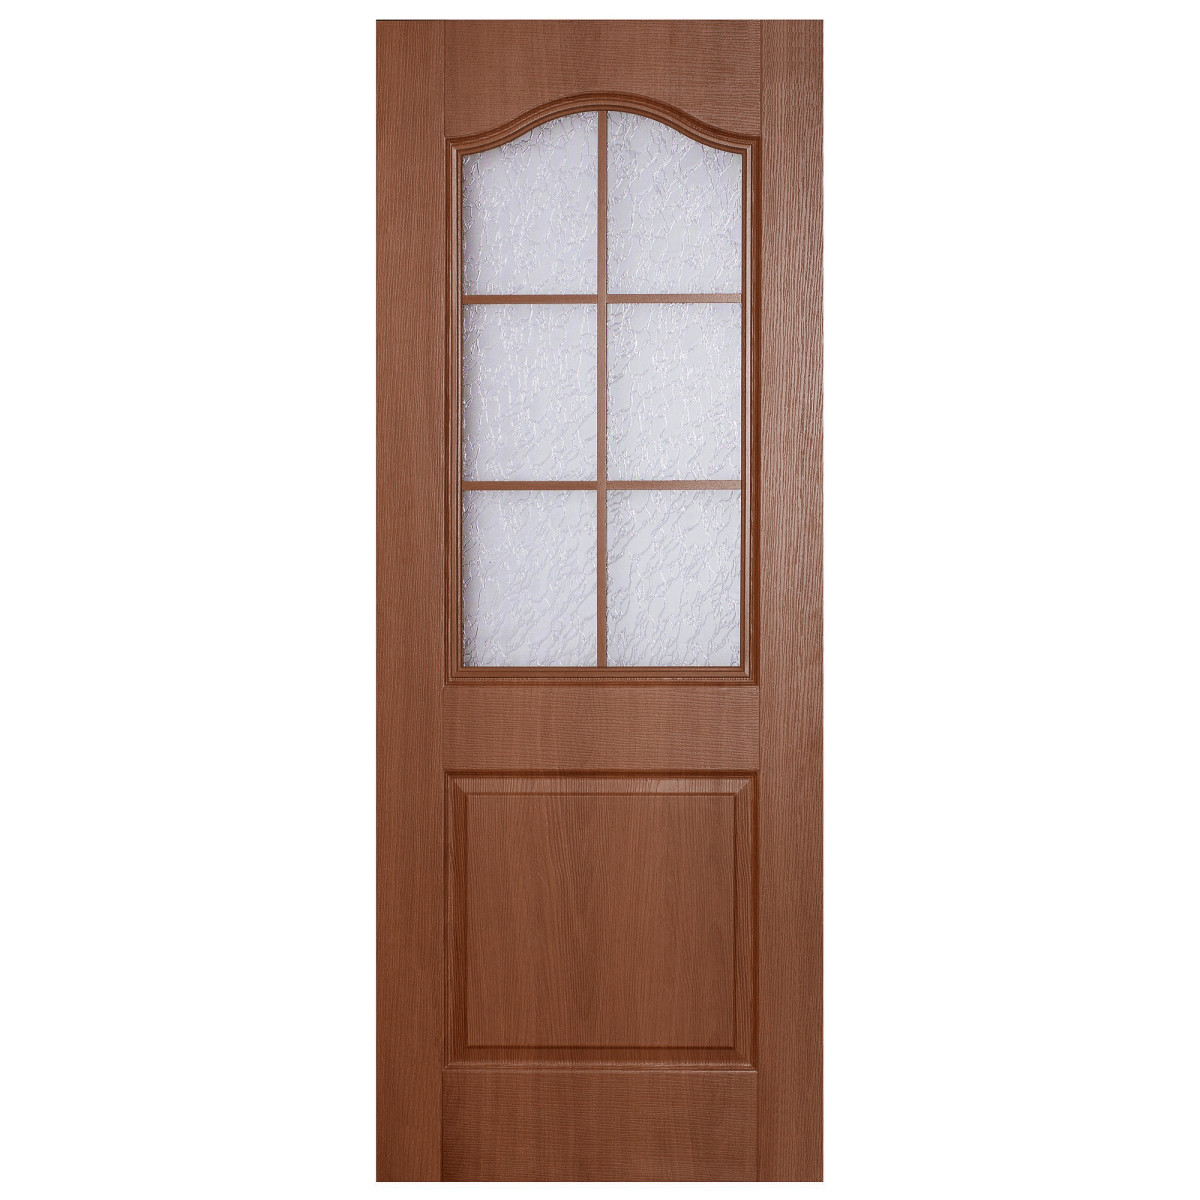 Дверь межкомнатная остеклённая ПВХ Антик 60x200 см цвет итальянский орех